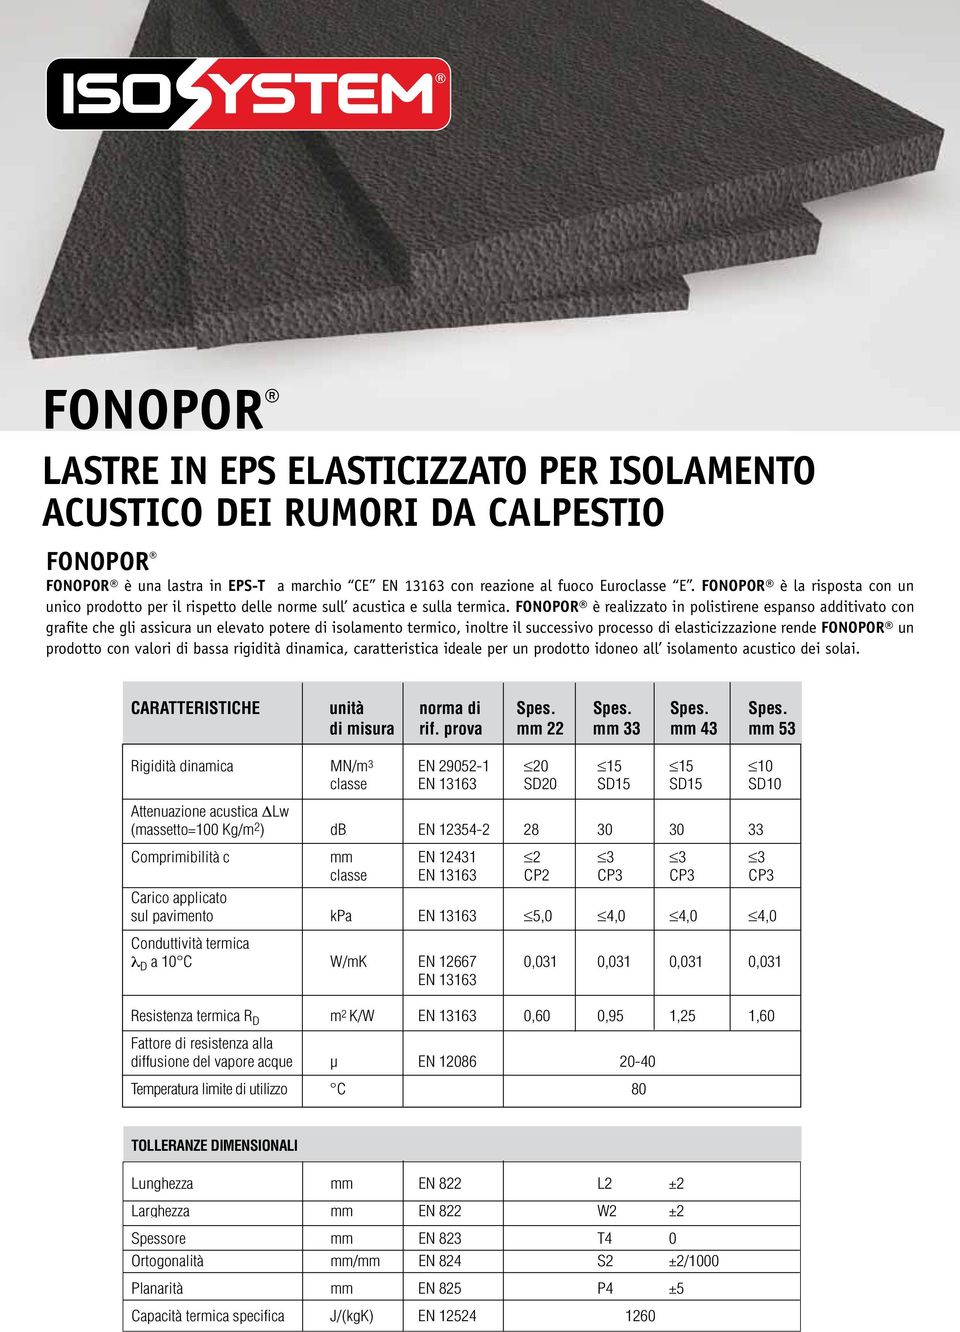 FONOPOR è realizzato in polistirene espanso additivato con grafite che gli assicura un elevato potere di isolamento termico, inoltre il successivo processo di elasticizzazione rende FONOPOR un